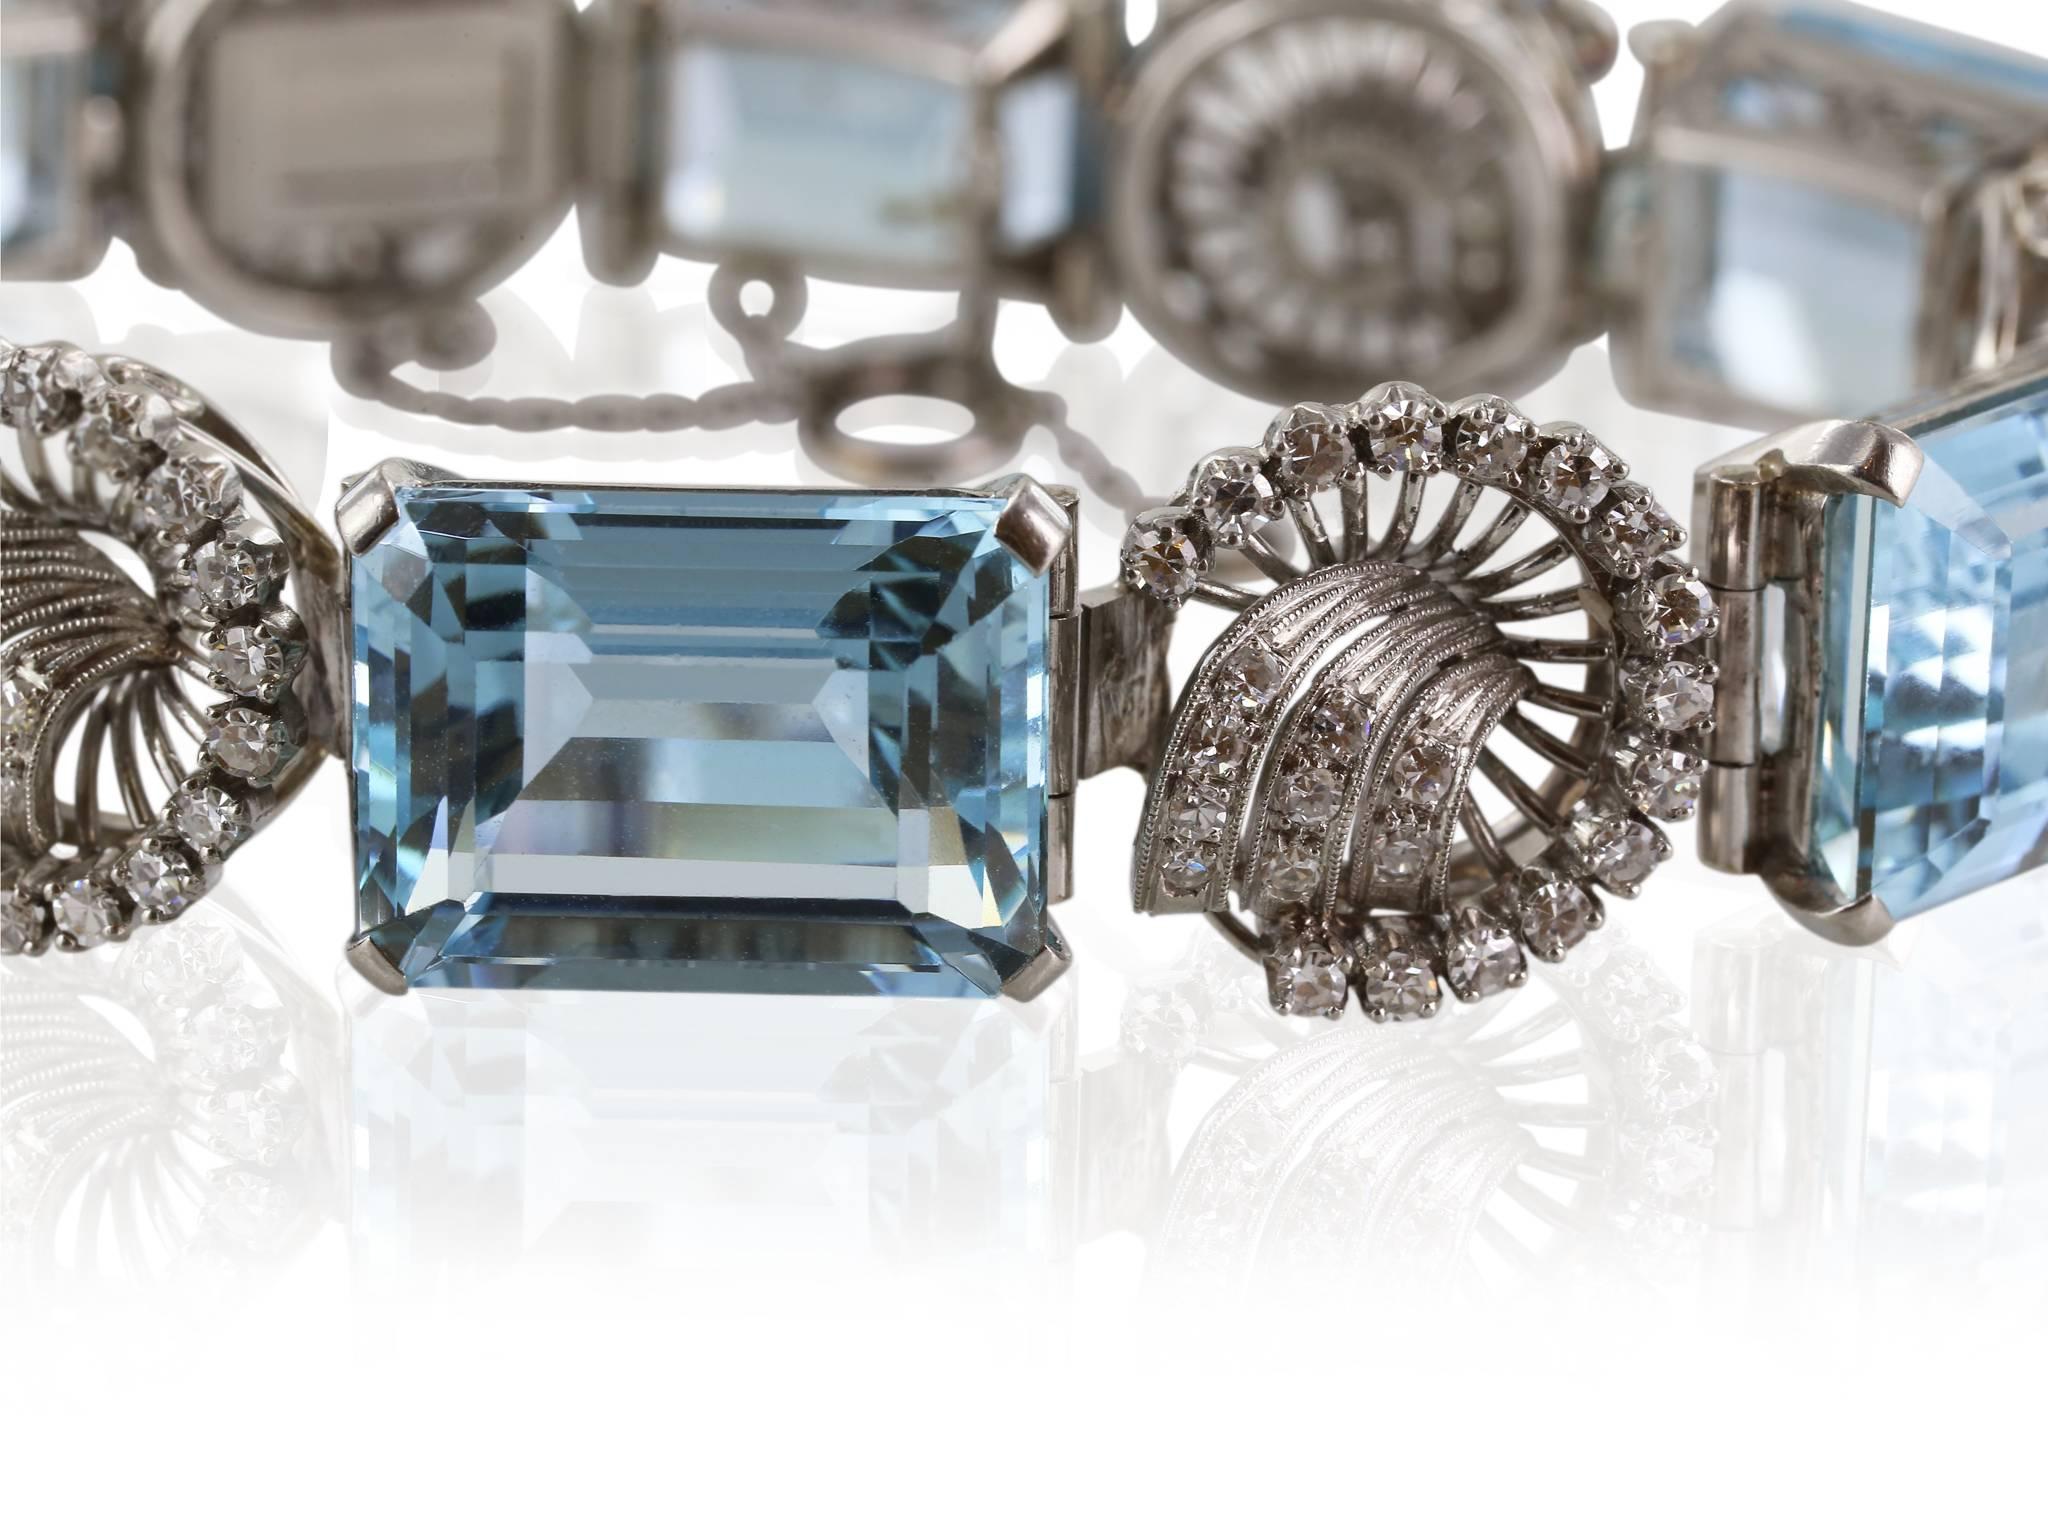 Platinum set Retro approximately 65 carat aquamarine bracelet featuring 6 emerald cut aquamarines and a swirl patter of round brilliant cut diamonds set between the aquamarines.